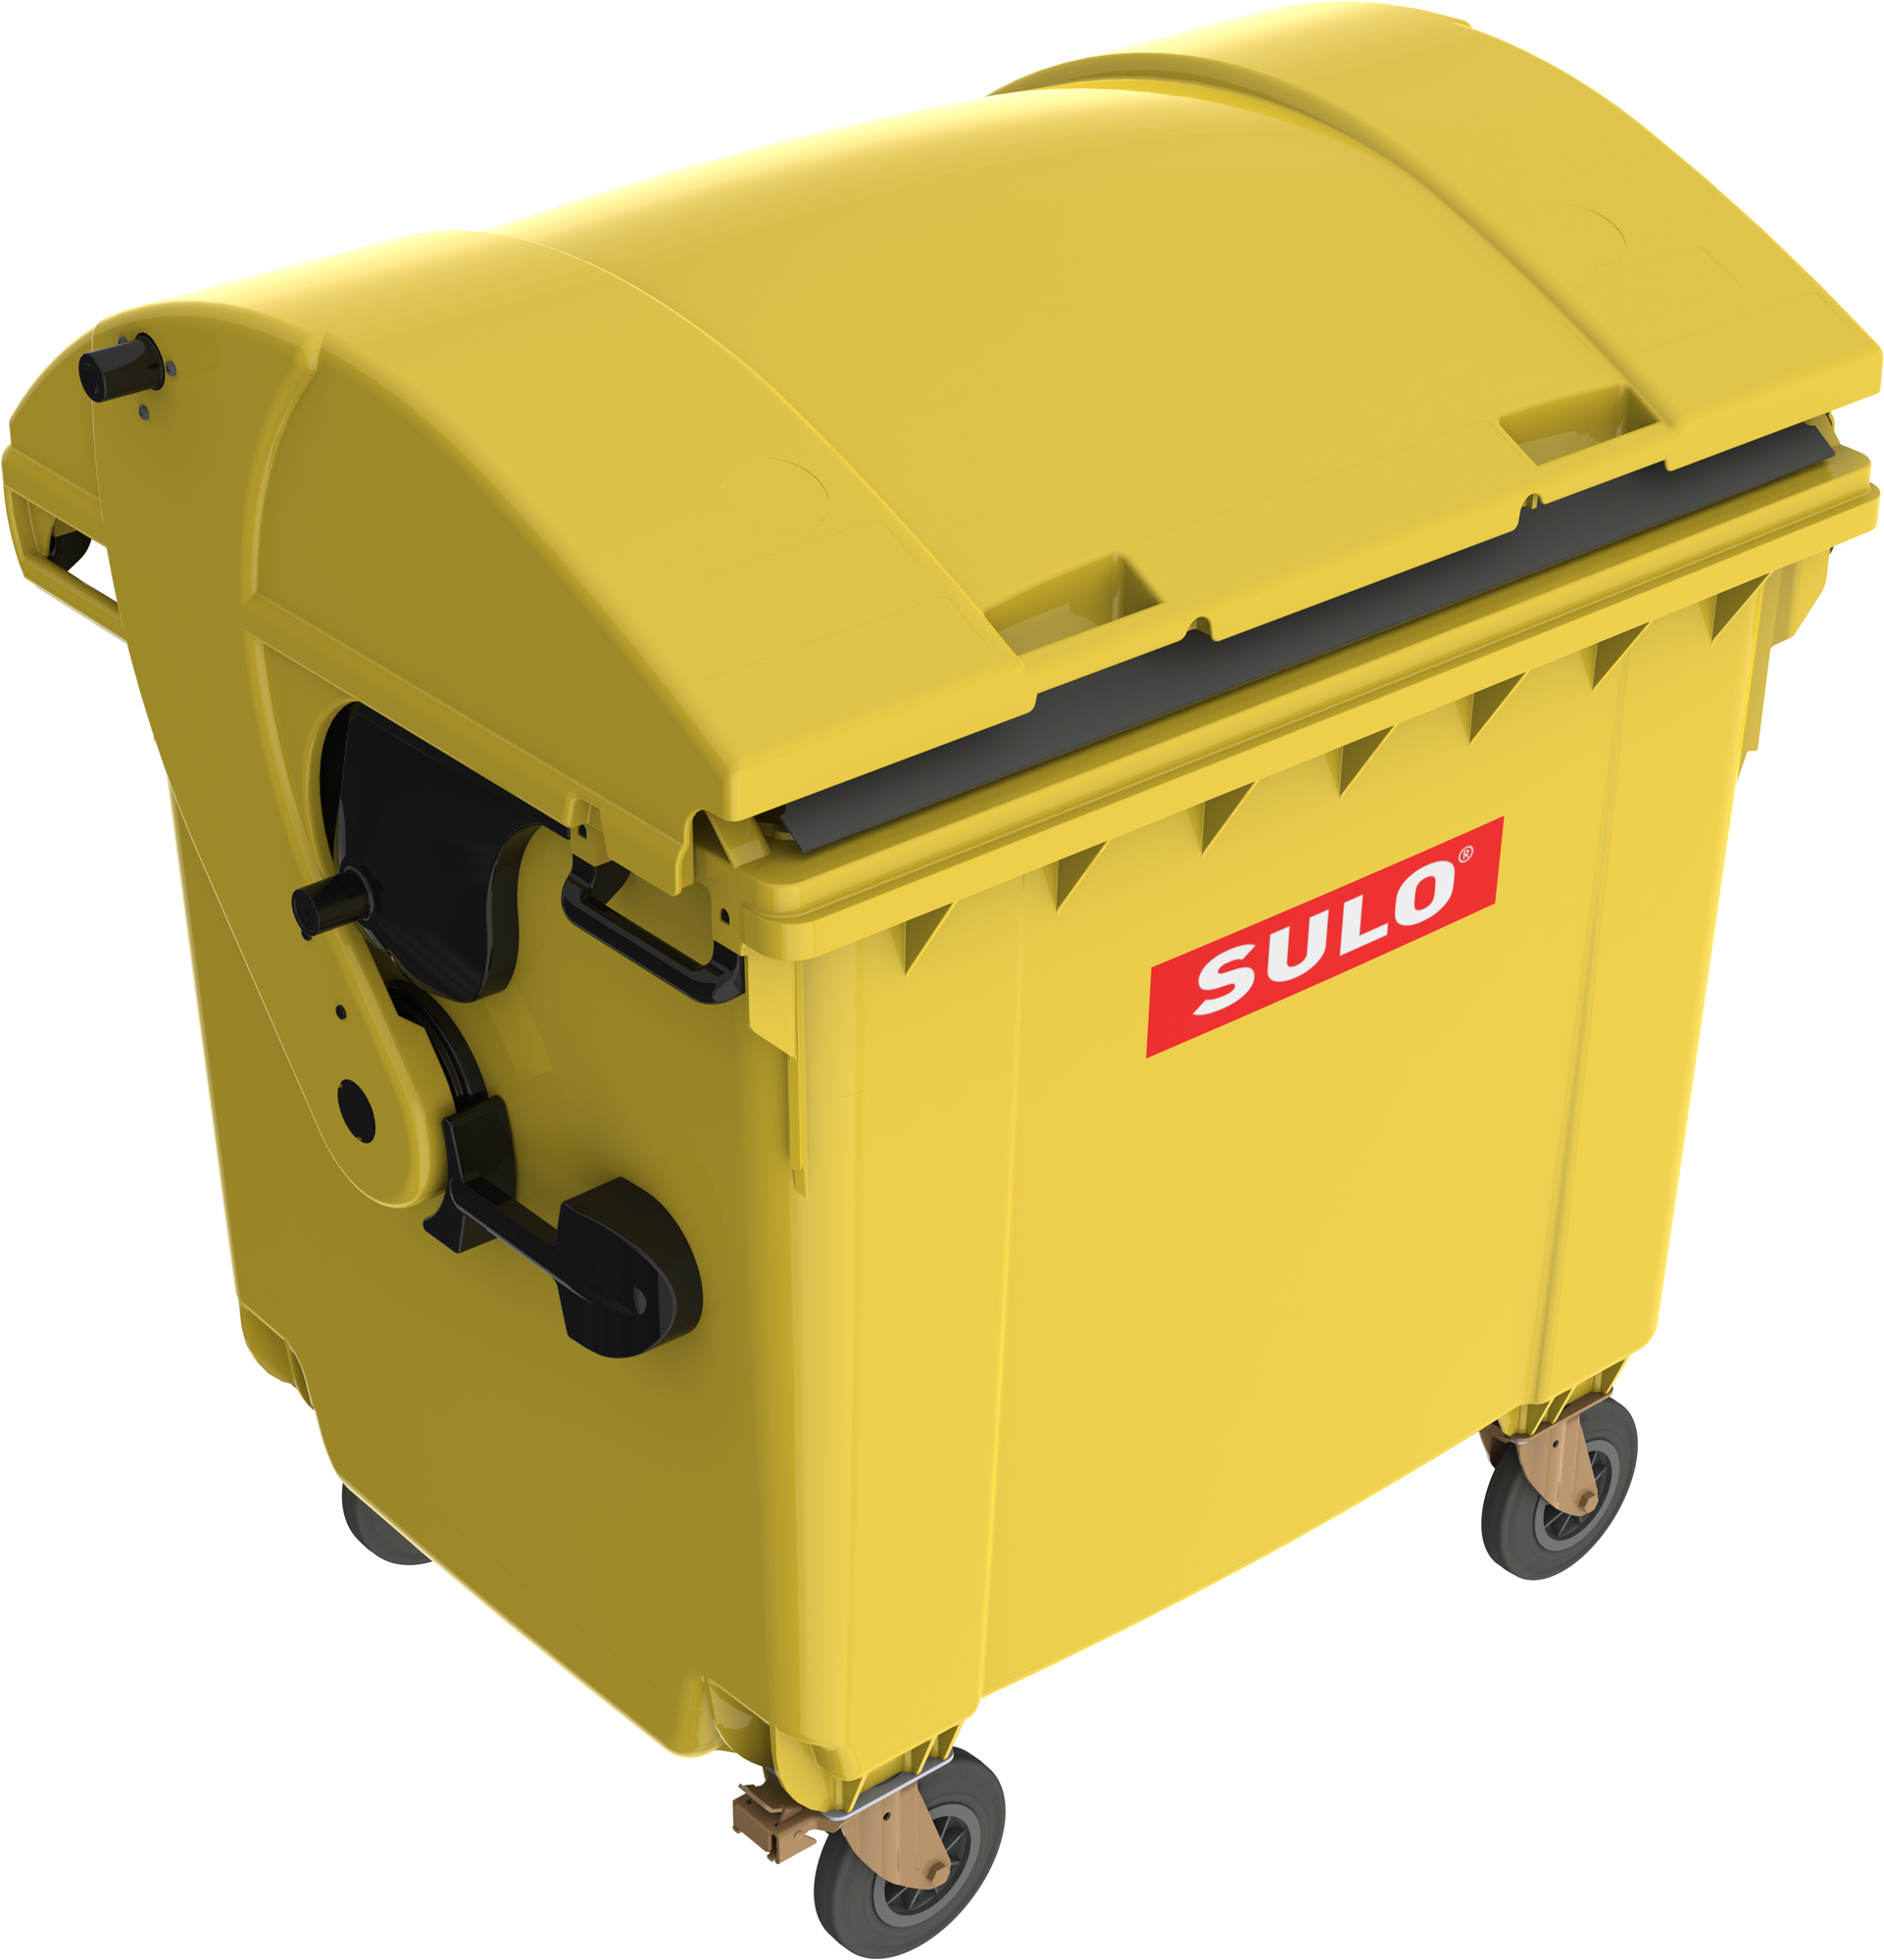 Eurocontainer din plastic 1100L galben cu capac rotund SULO – Transport Inclus 1100L